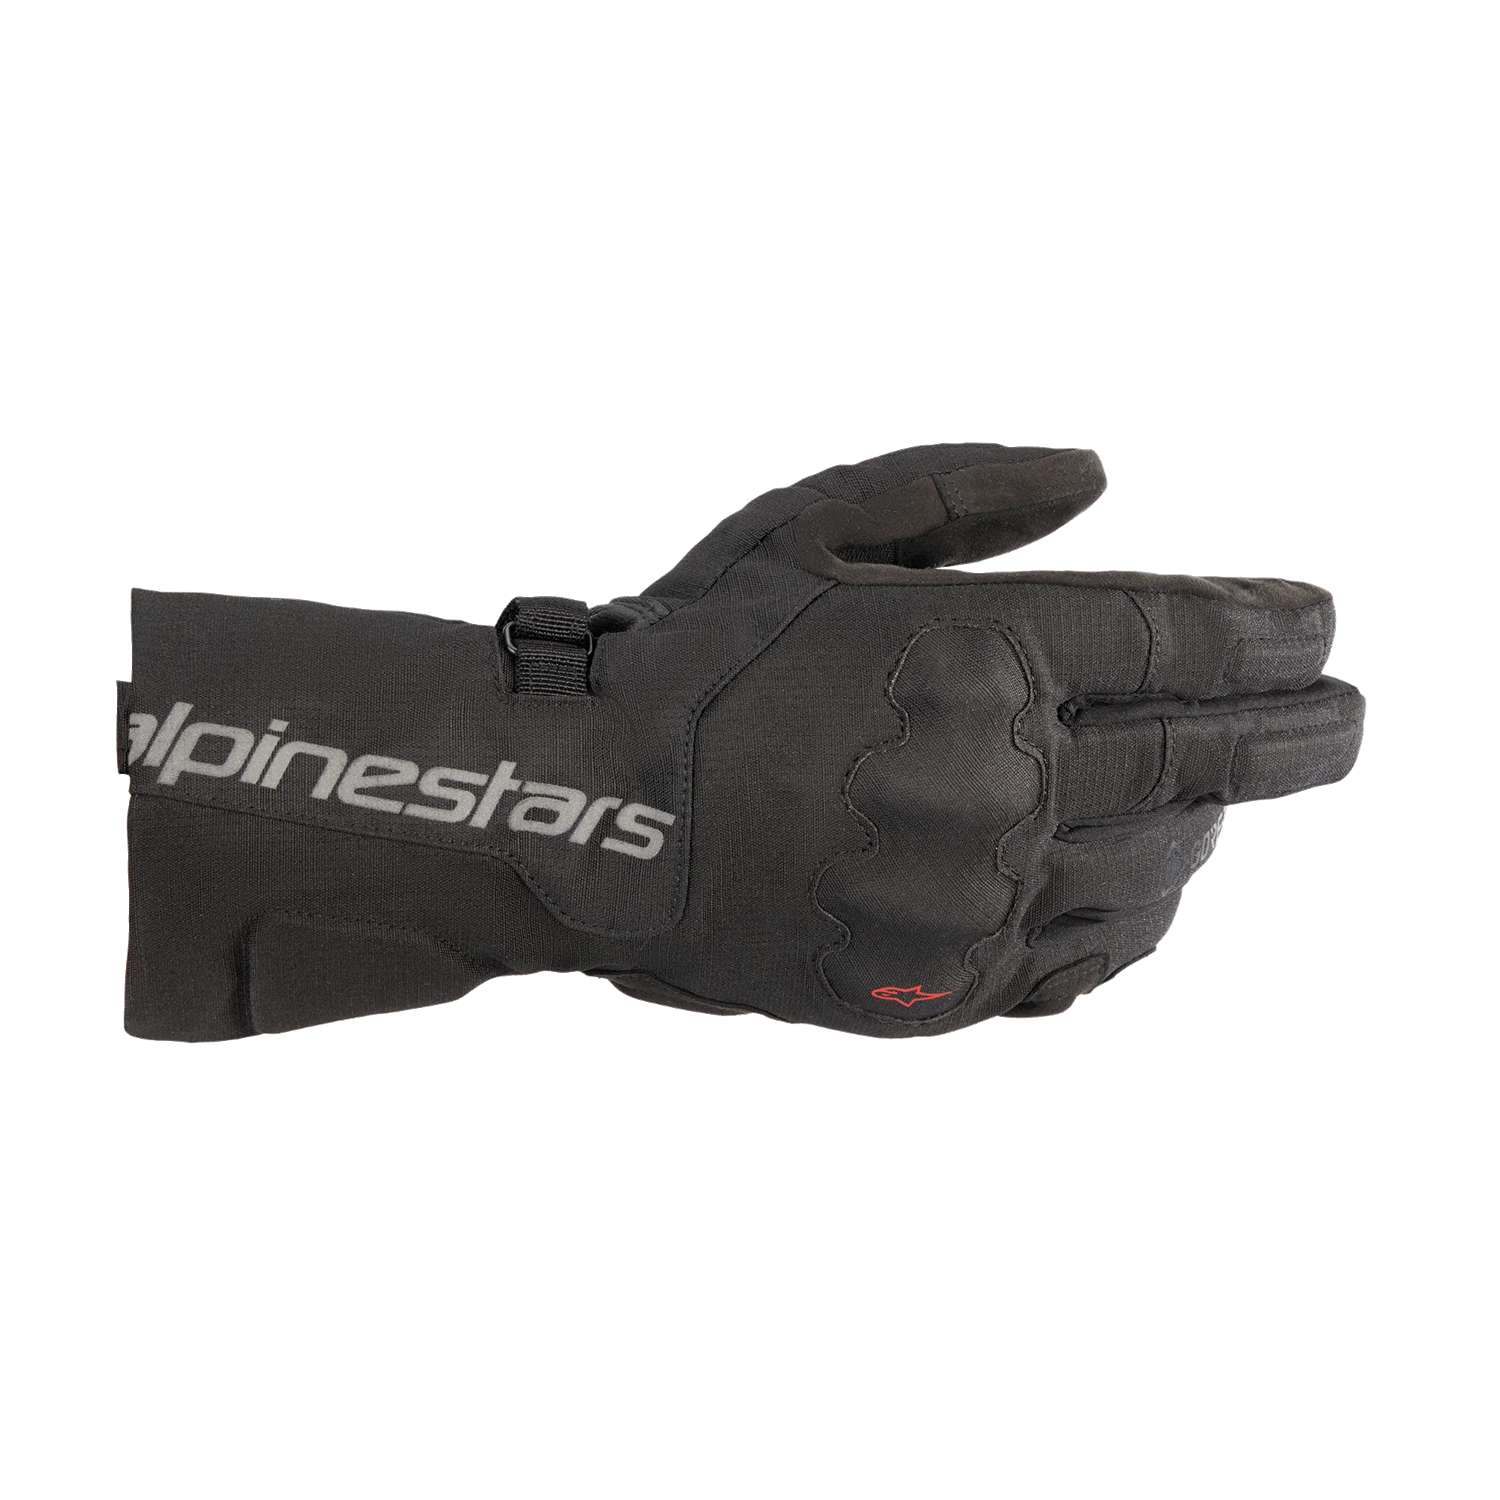 Image of Alpinestars Wr-X Gore-Tex Gloves Black Talla 2XL